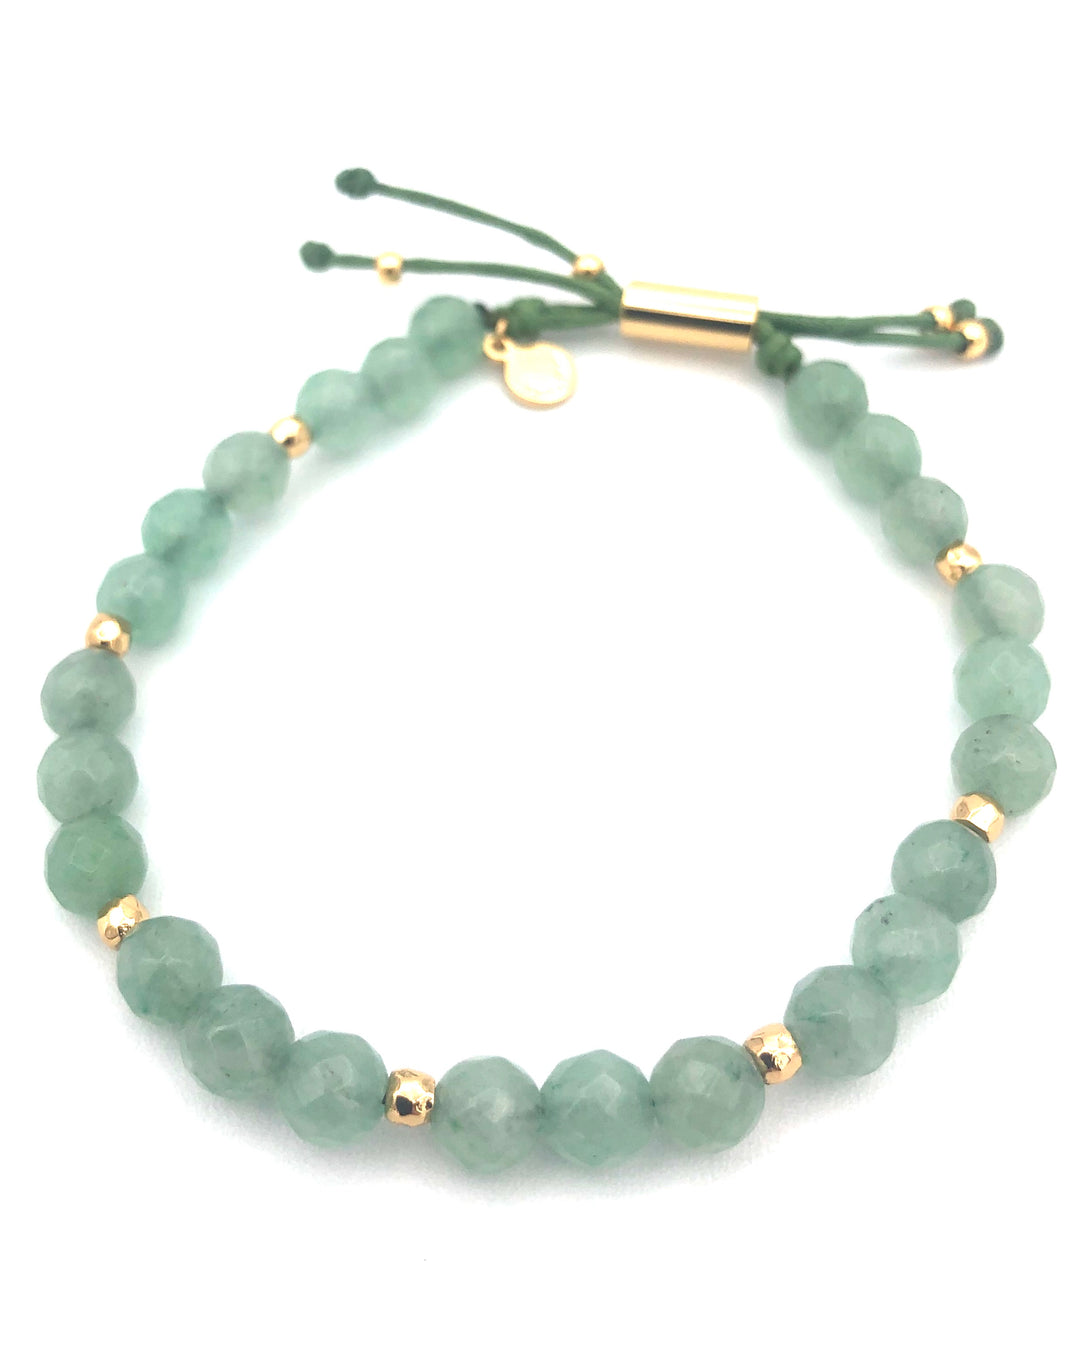 Turquoise Gemstone Bracelet